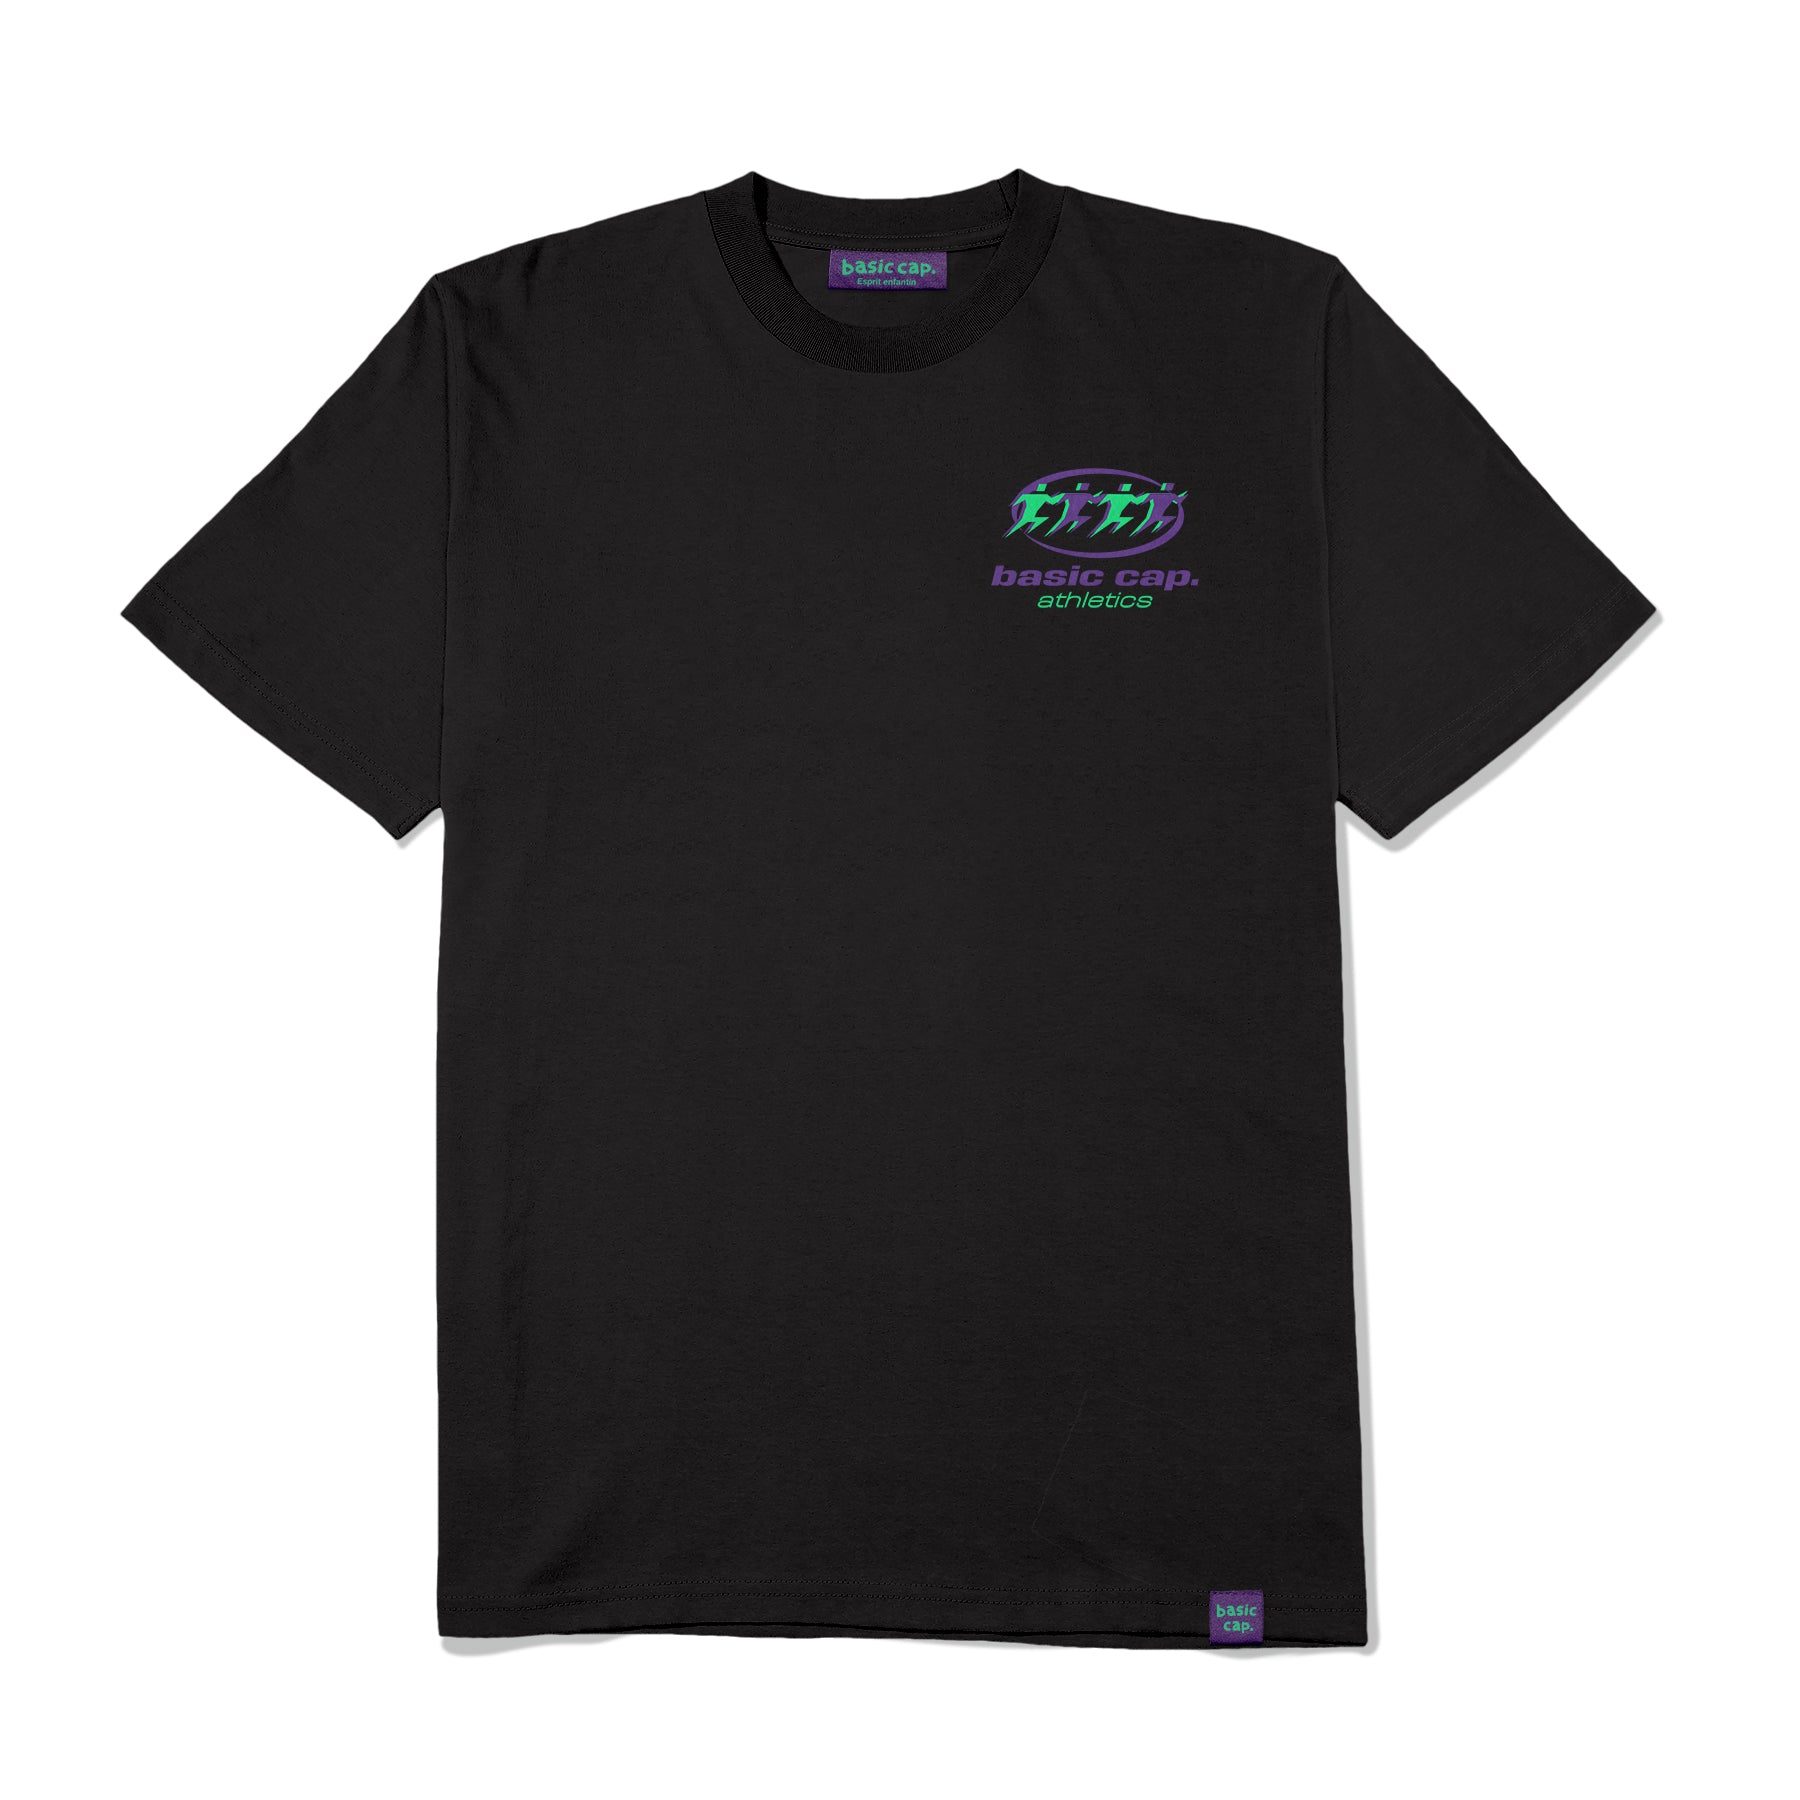 T-shirt Athletics T-Shirt - Black -Shirt - Black - basic cap. 